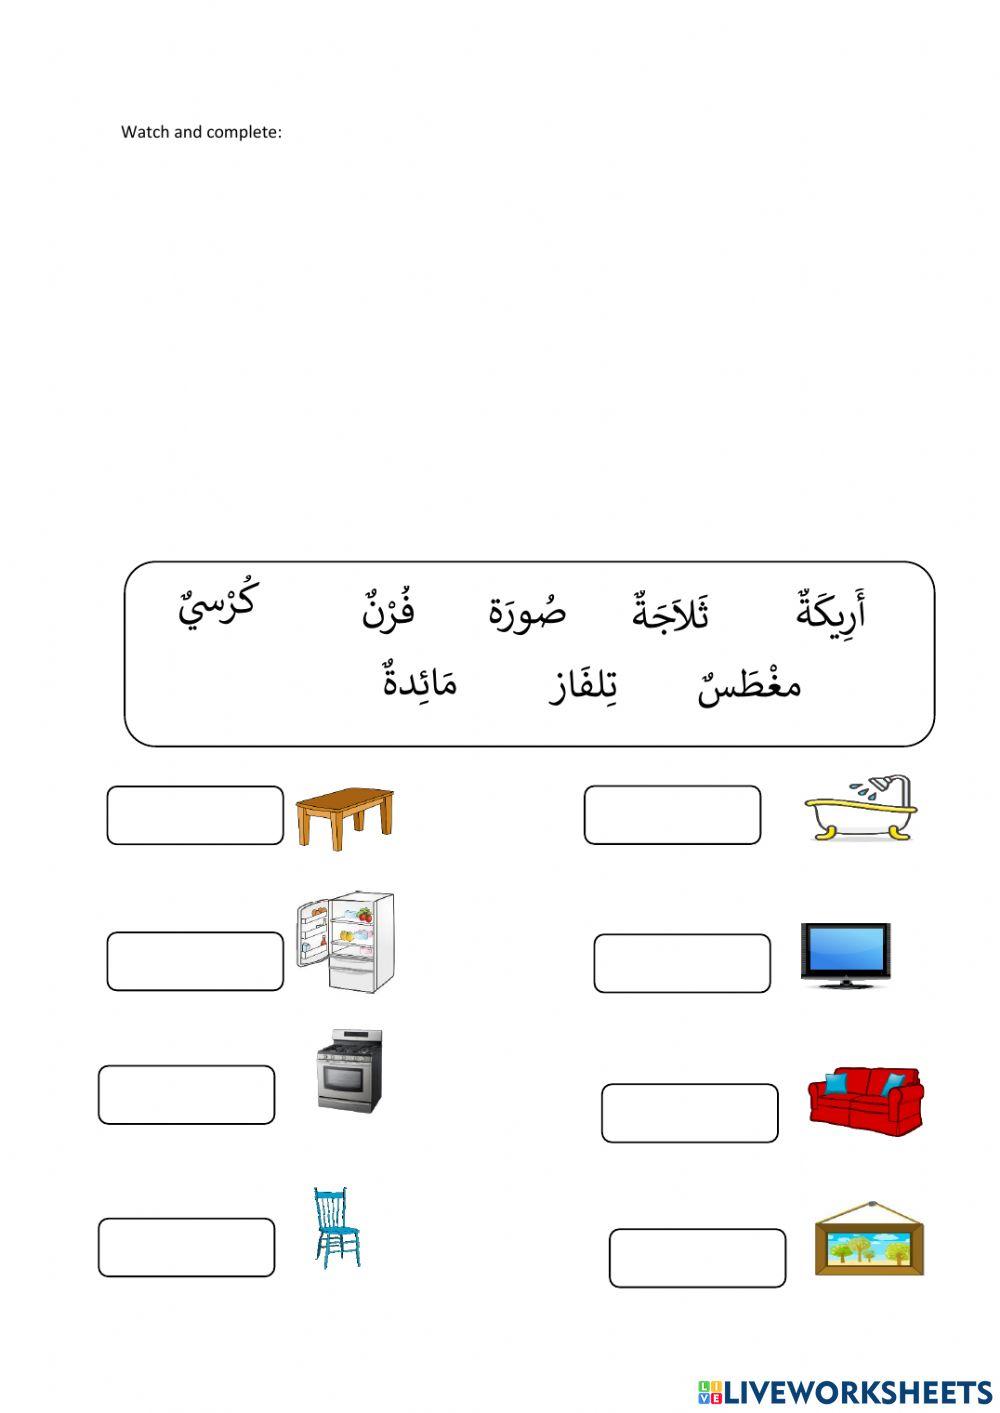 House furniture in Arabic